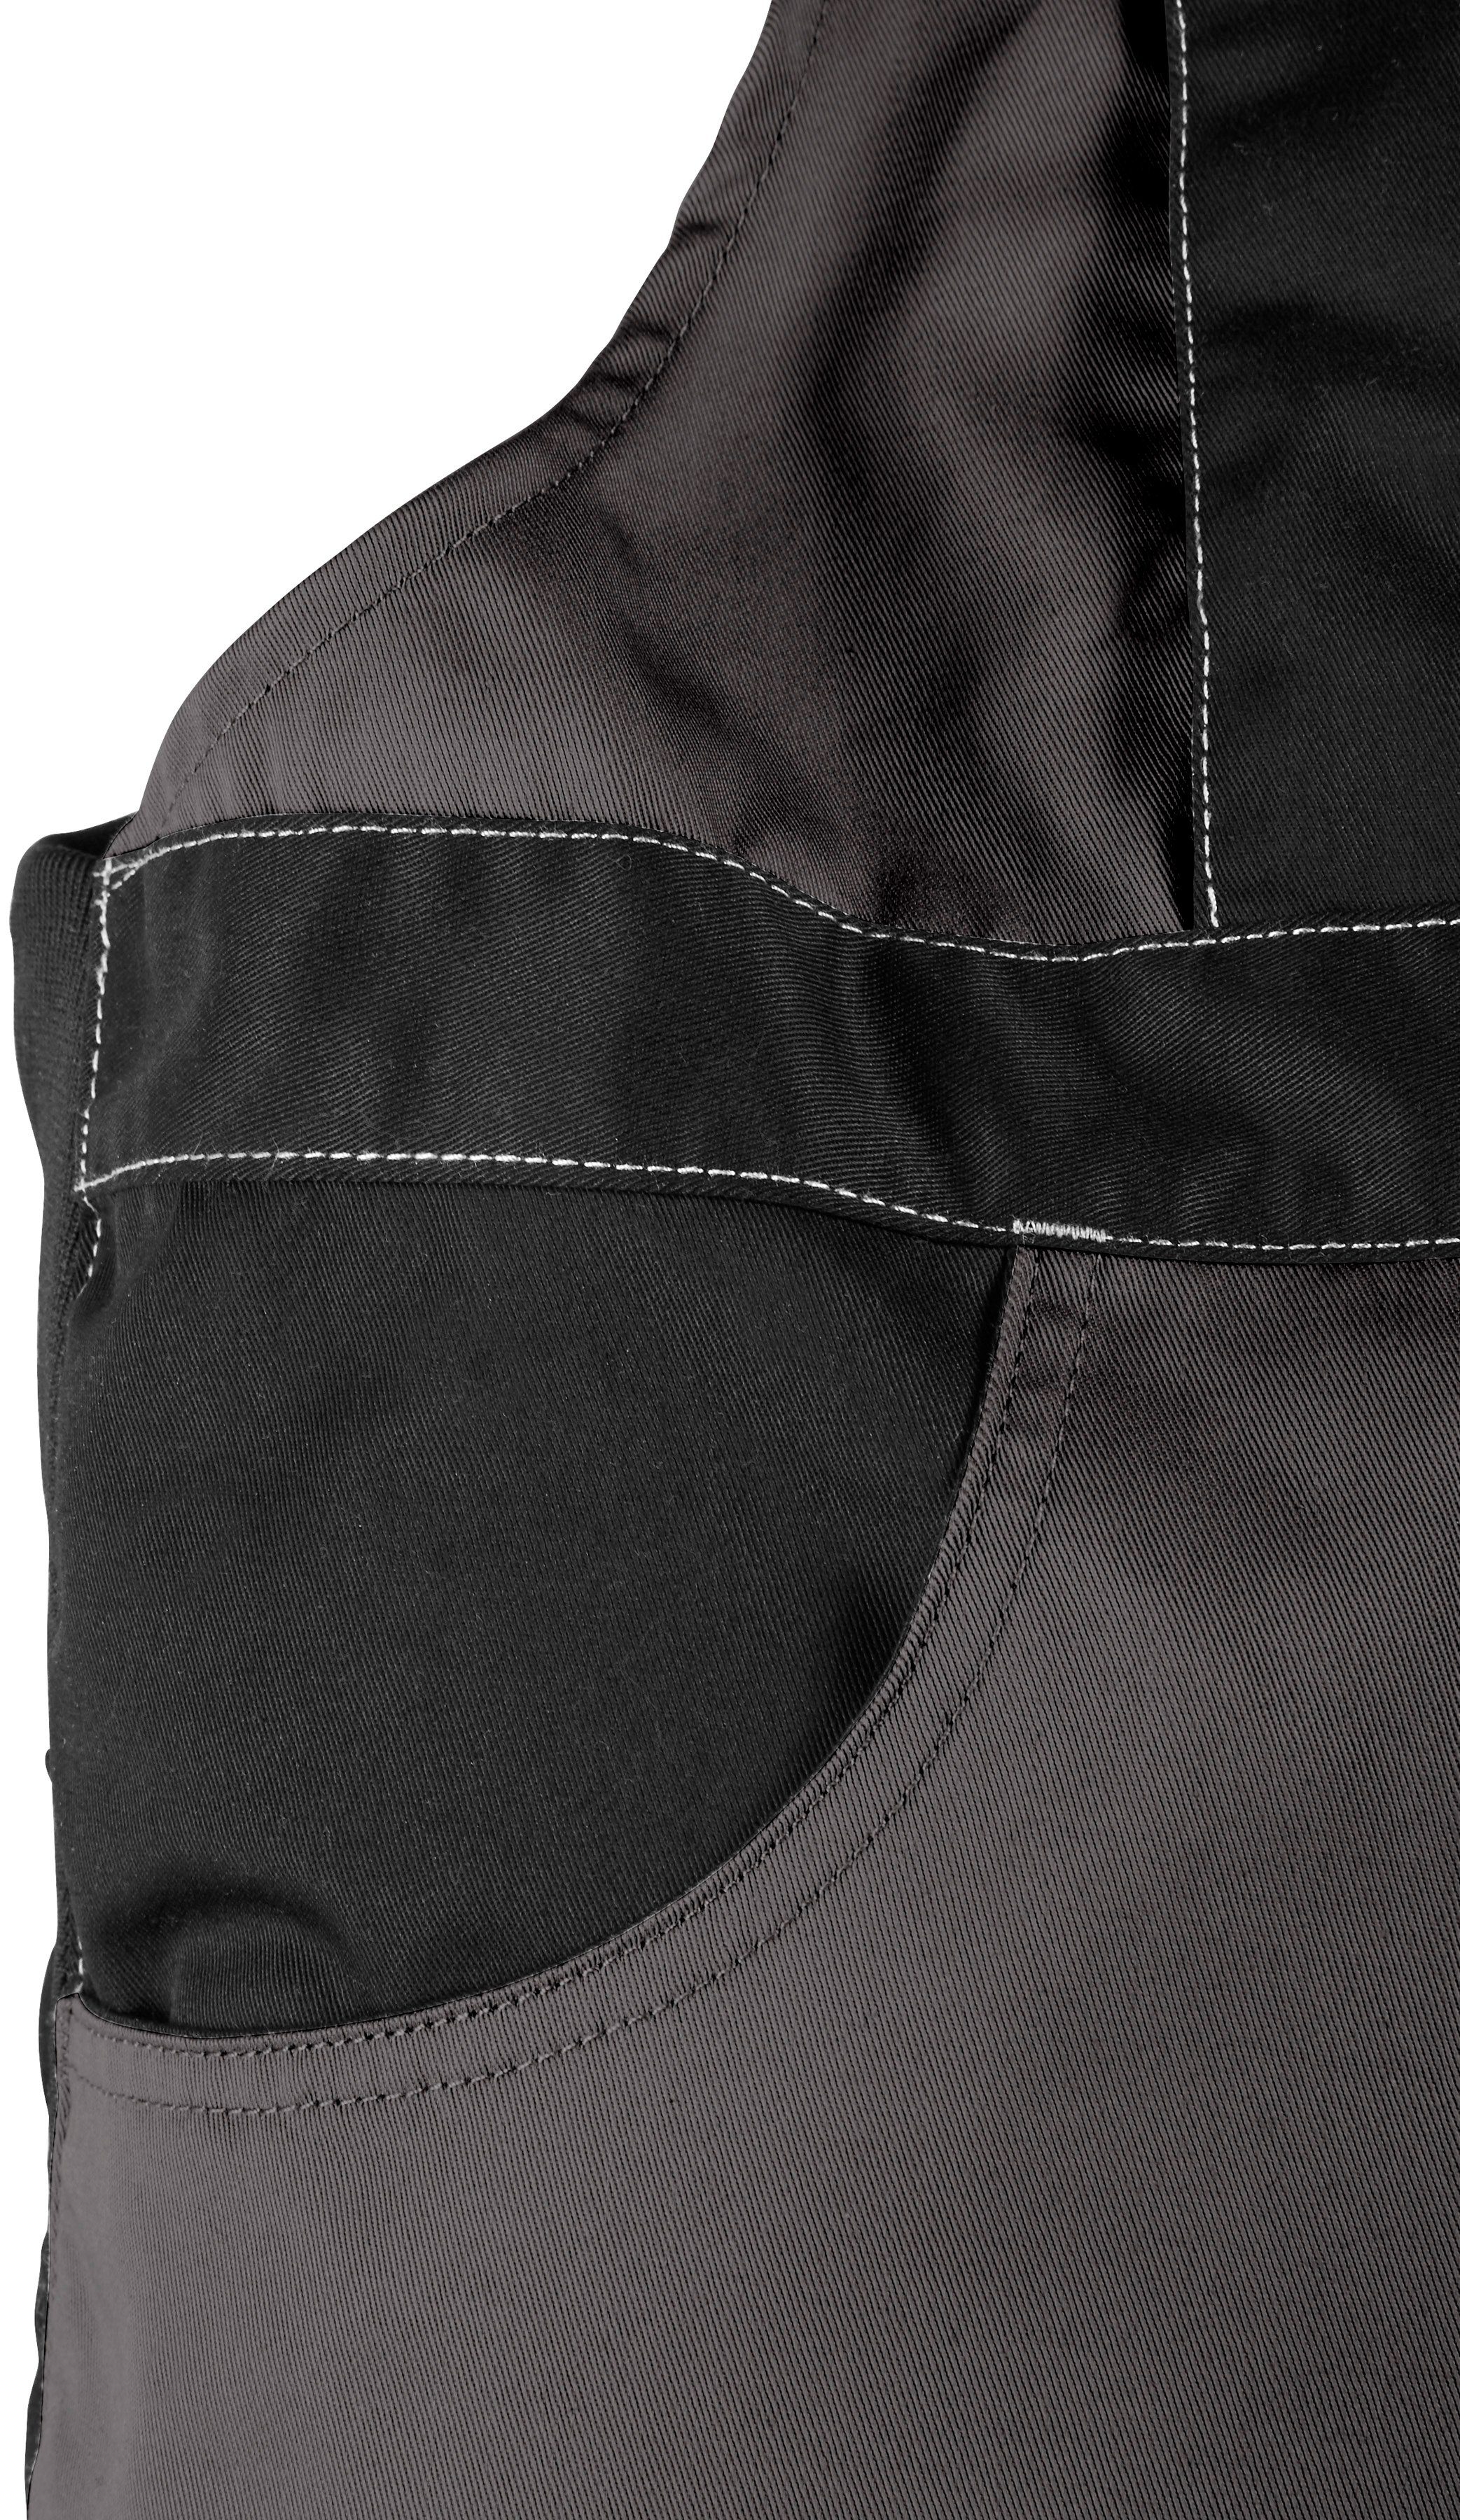 Northern Country Latzhose Worker Kniebereich, Taschen 11 dehnbarer mit mit verstärktem grau-schwarz Bund, robust